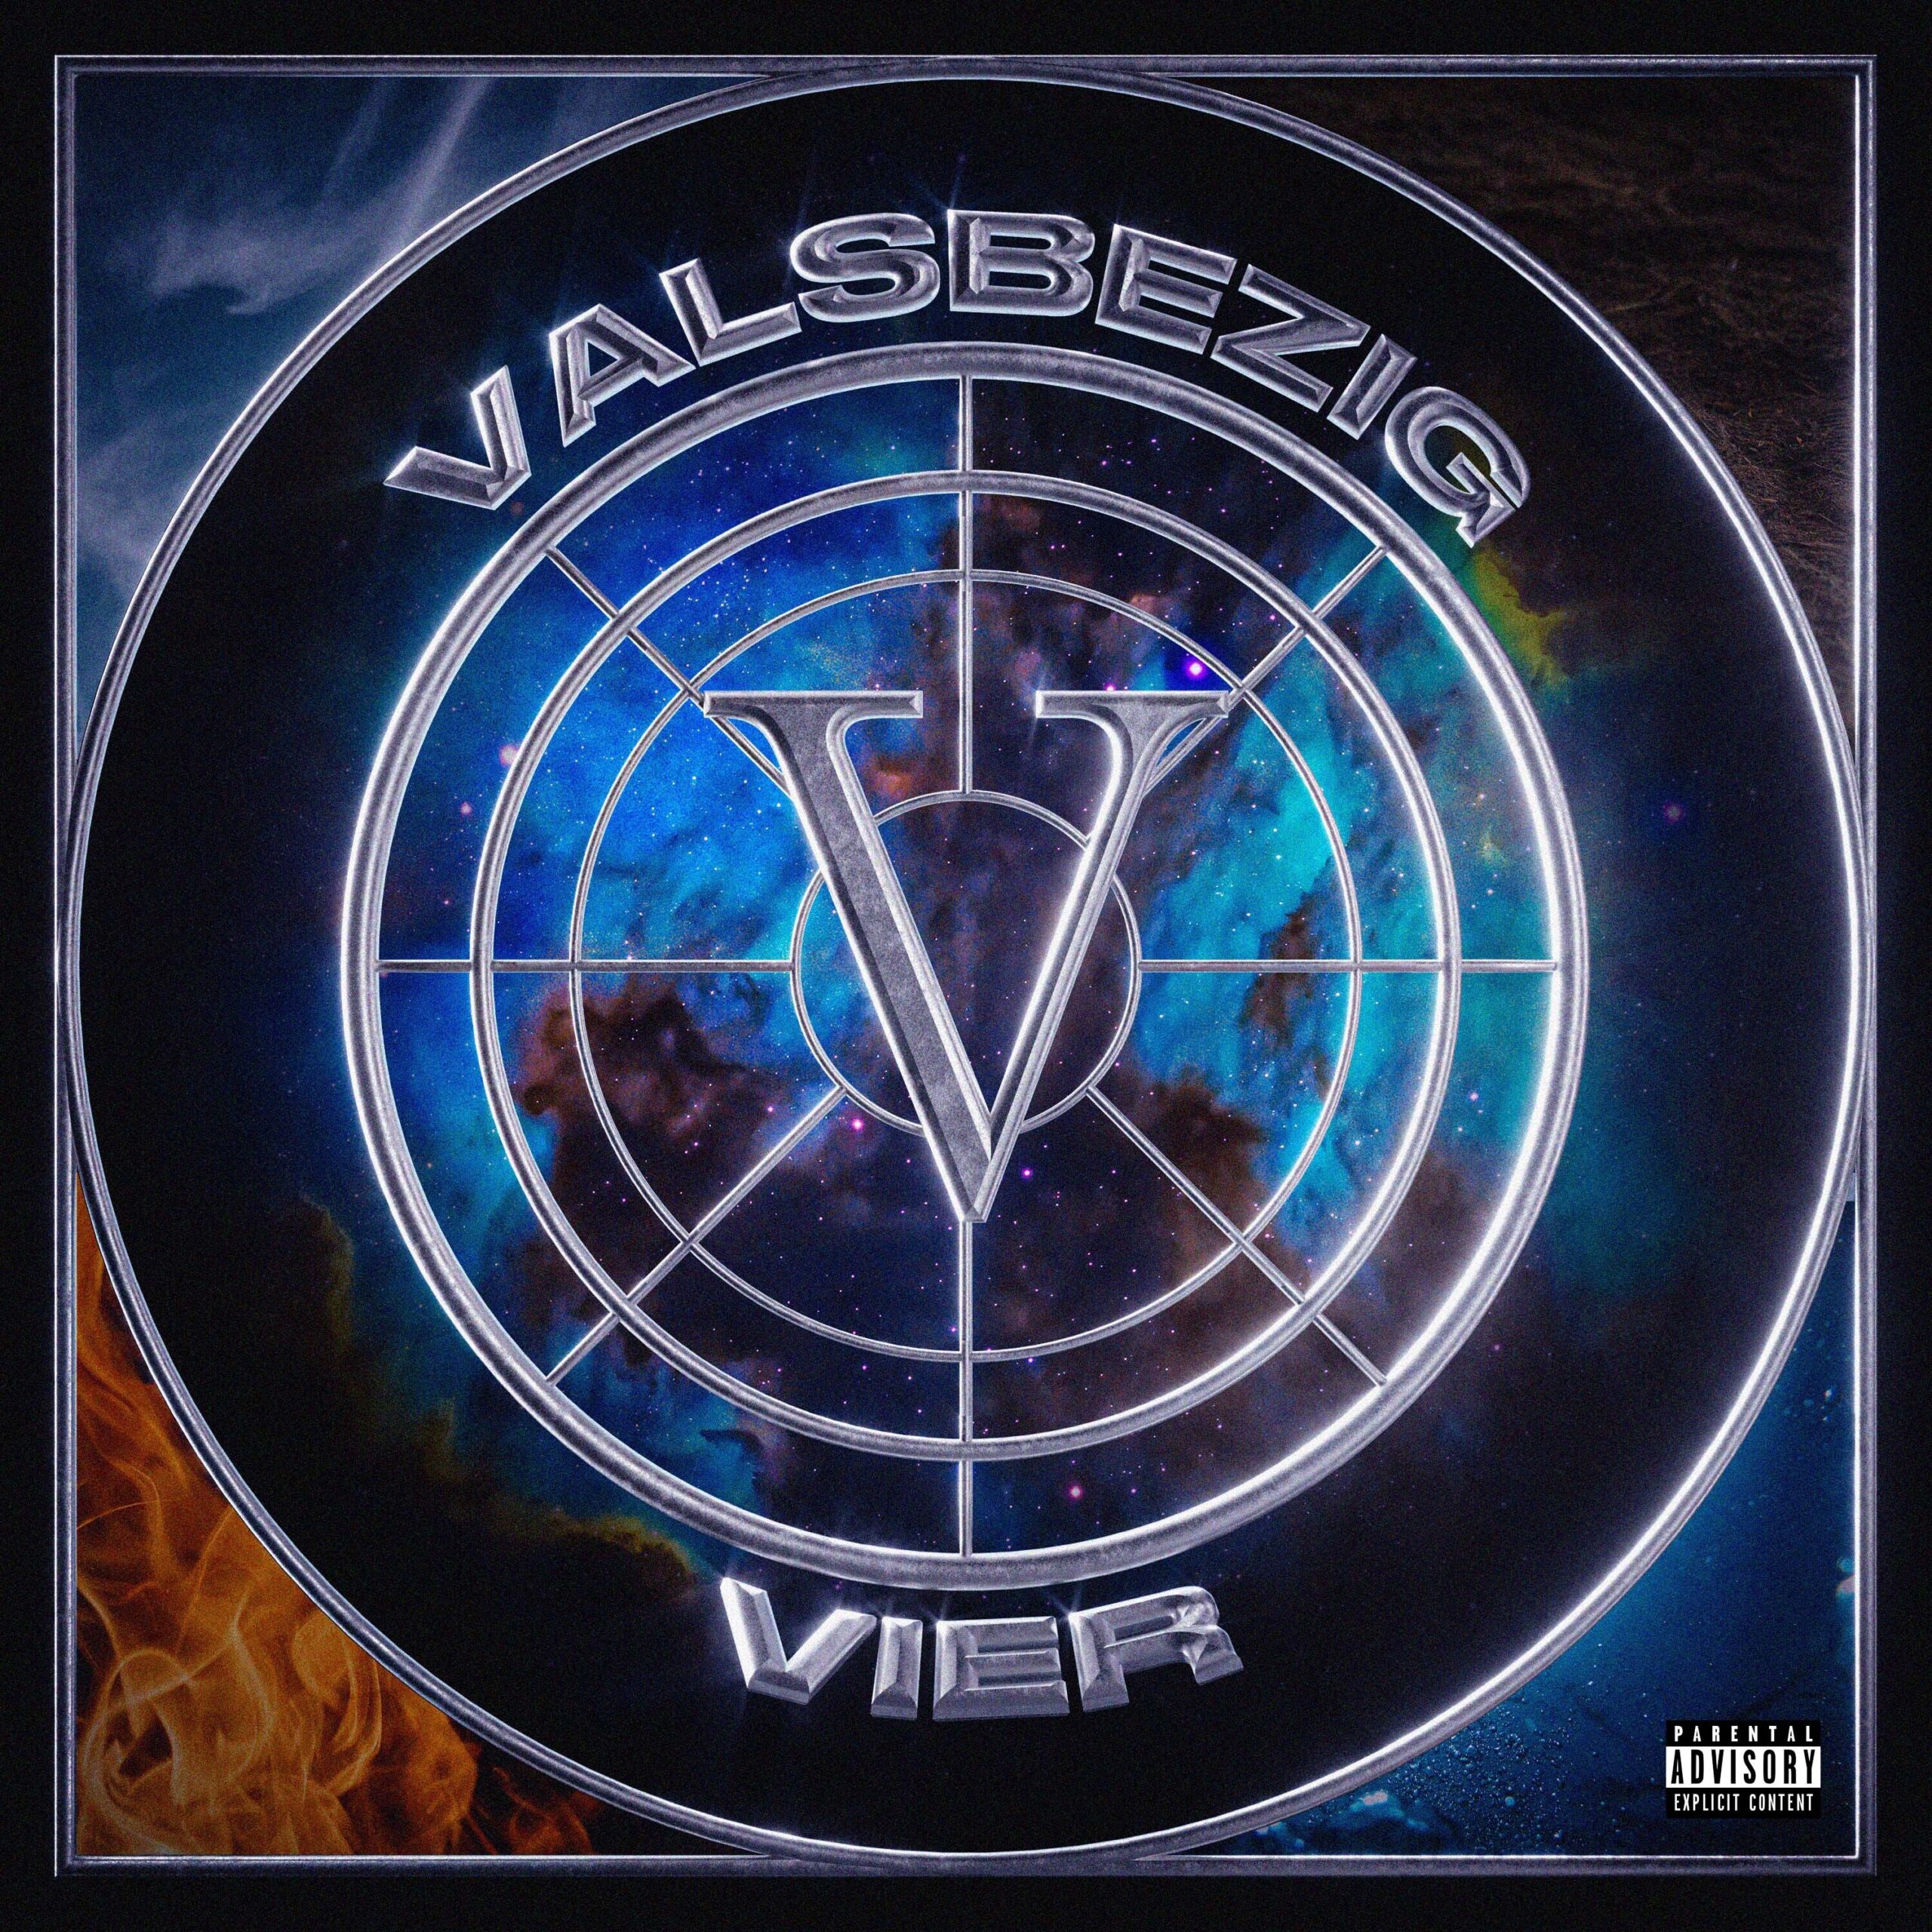 Valsbezig brengt nieuwe EP uit: VIER. Lees meer hier.